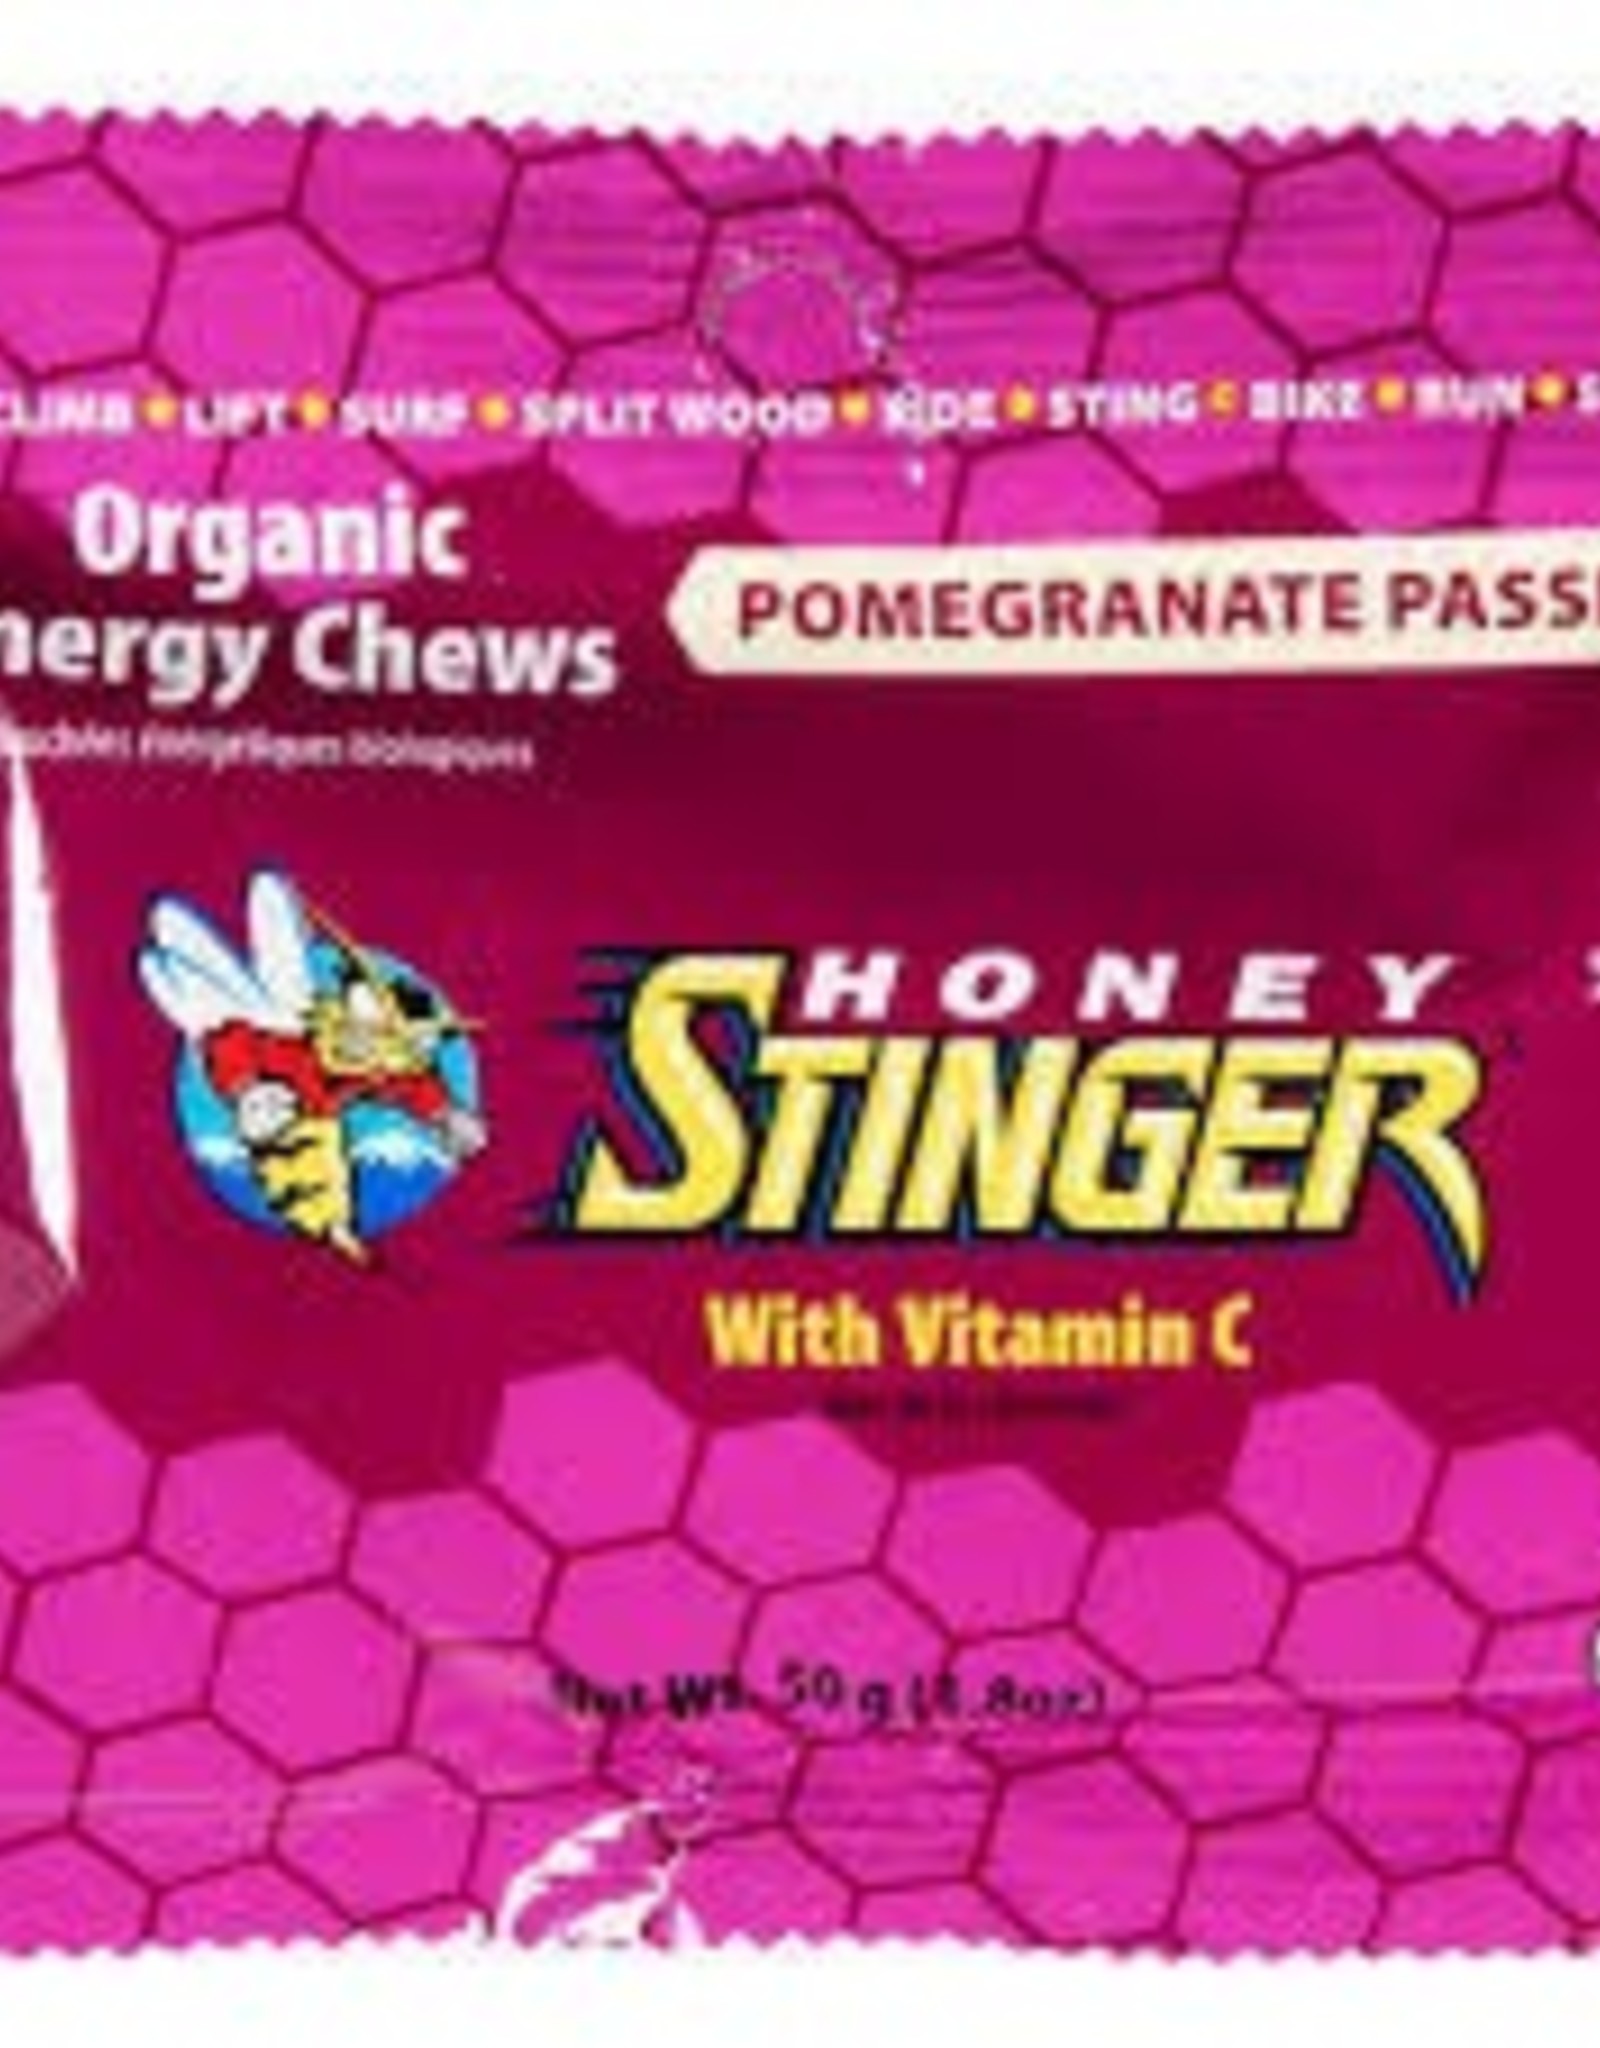 HONEY STINGER ORGANIC CHEWS